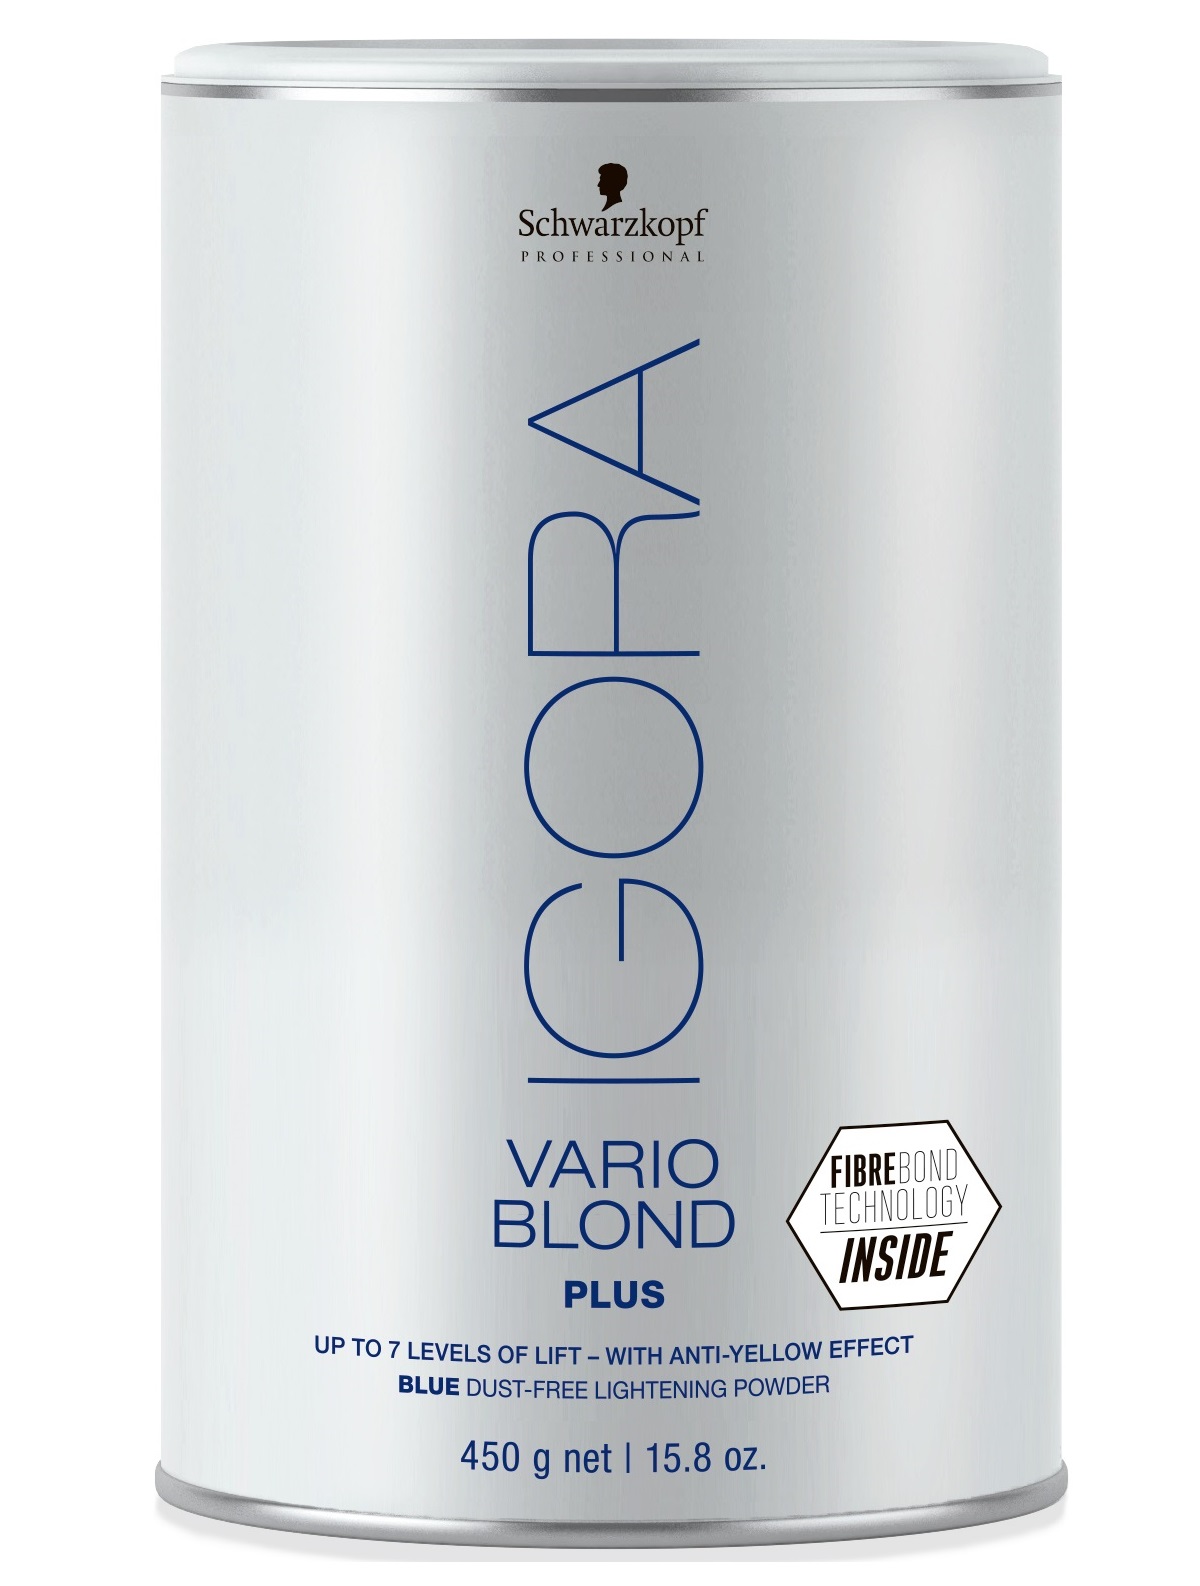 Осветляющая пудра для волос Schwarzkopf Professional Igora Royal Vario Blond Plus, голубая, 450 г (2679372) - фото 1